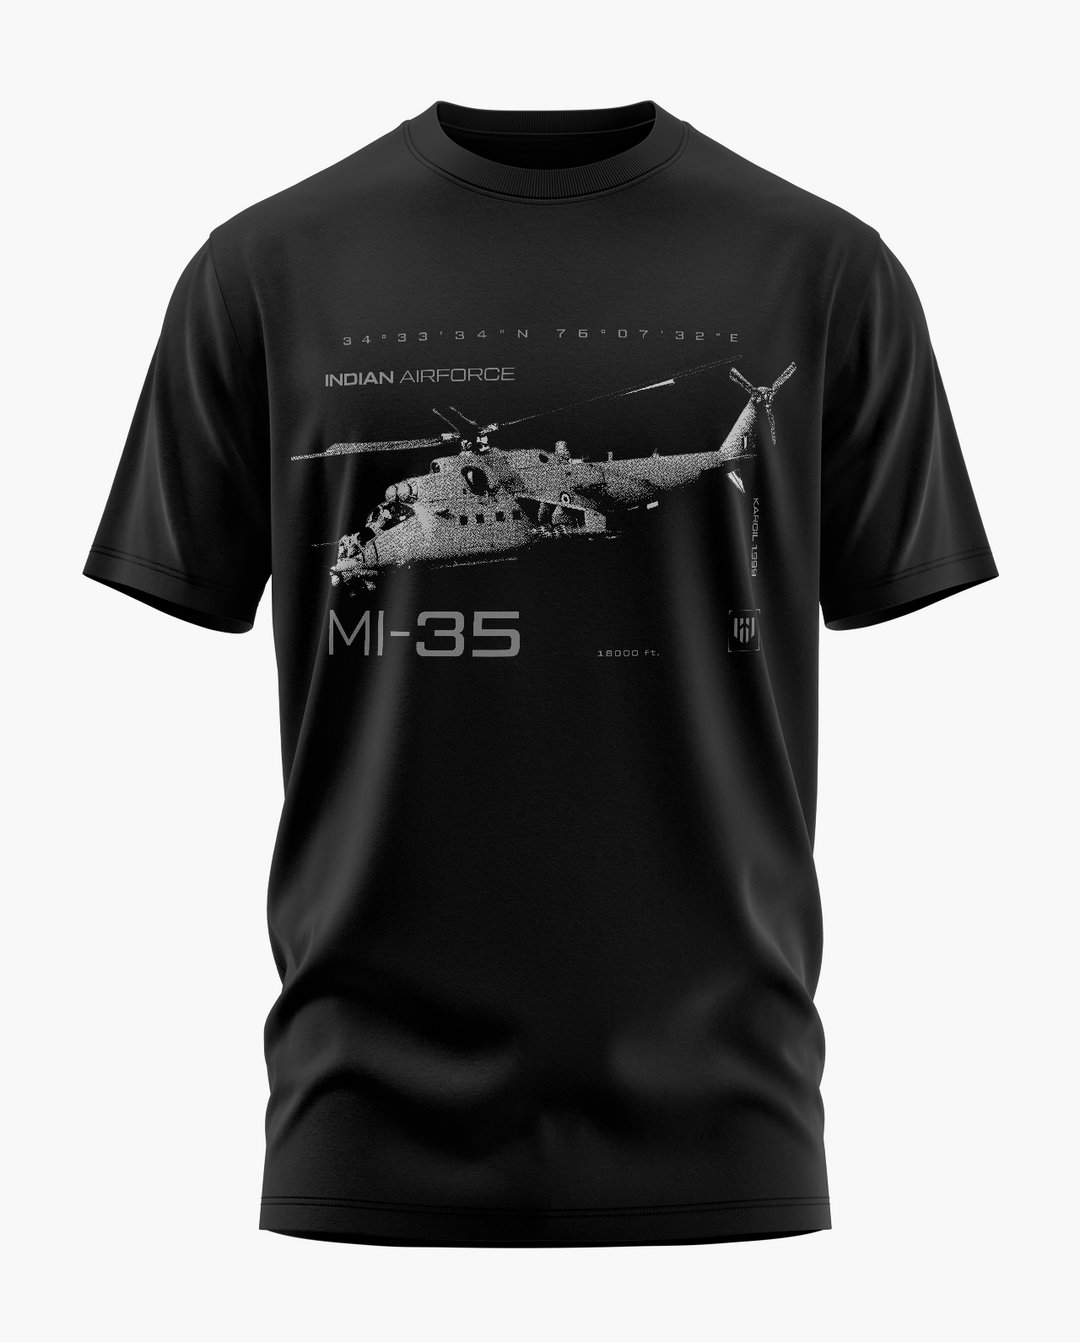 THE MI-35 KARGIL T-Shirt